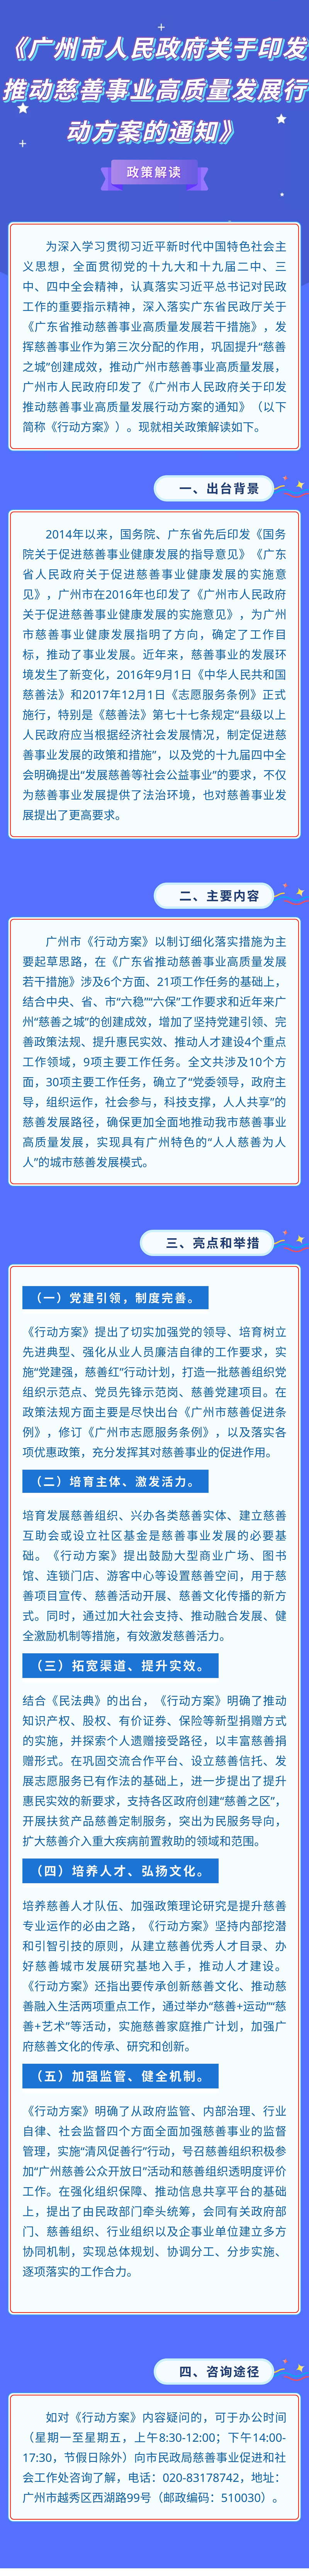 07-一图读懂：《广州市人民政府关于印发推动慈善事业高质量发展行动方案的通知》.jpg